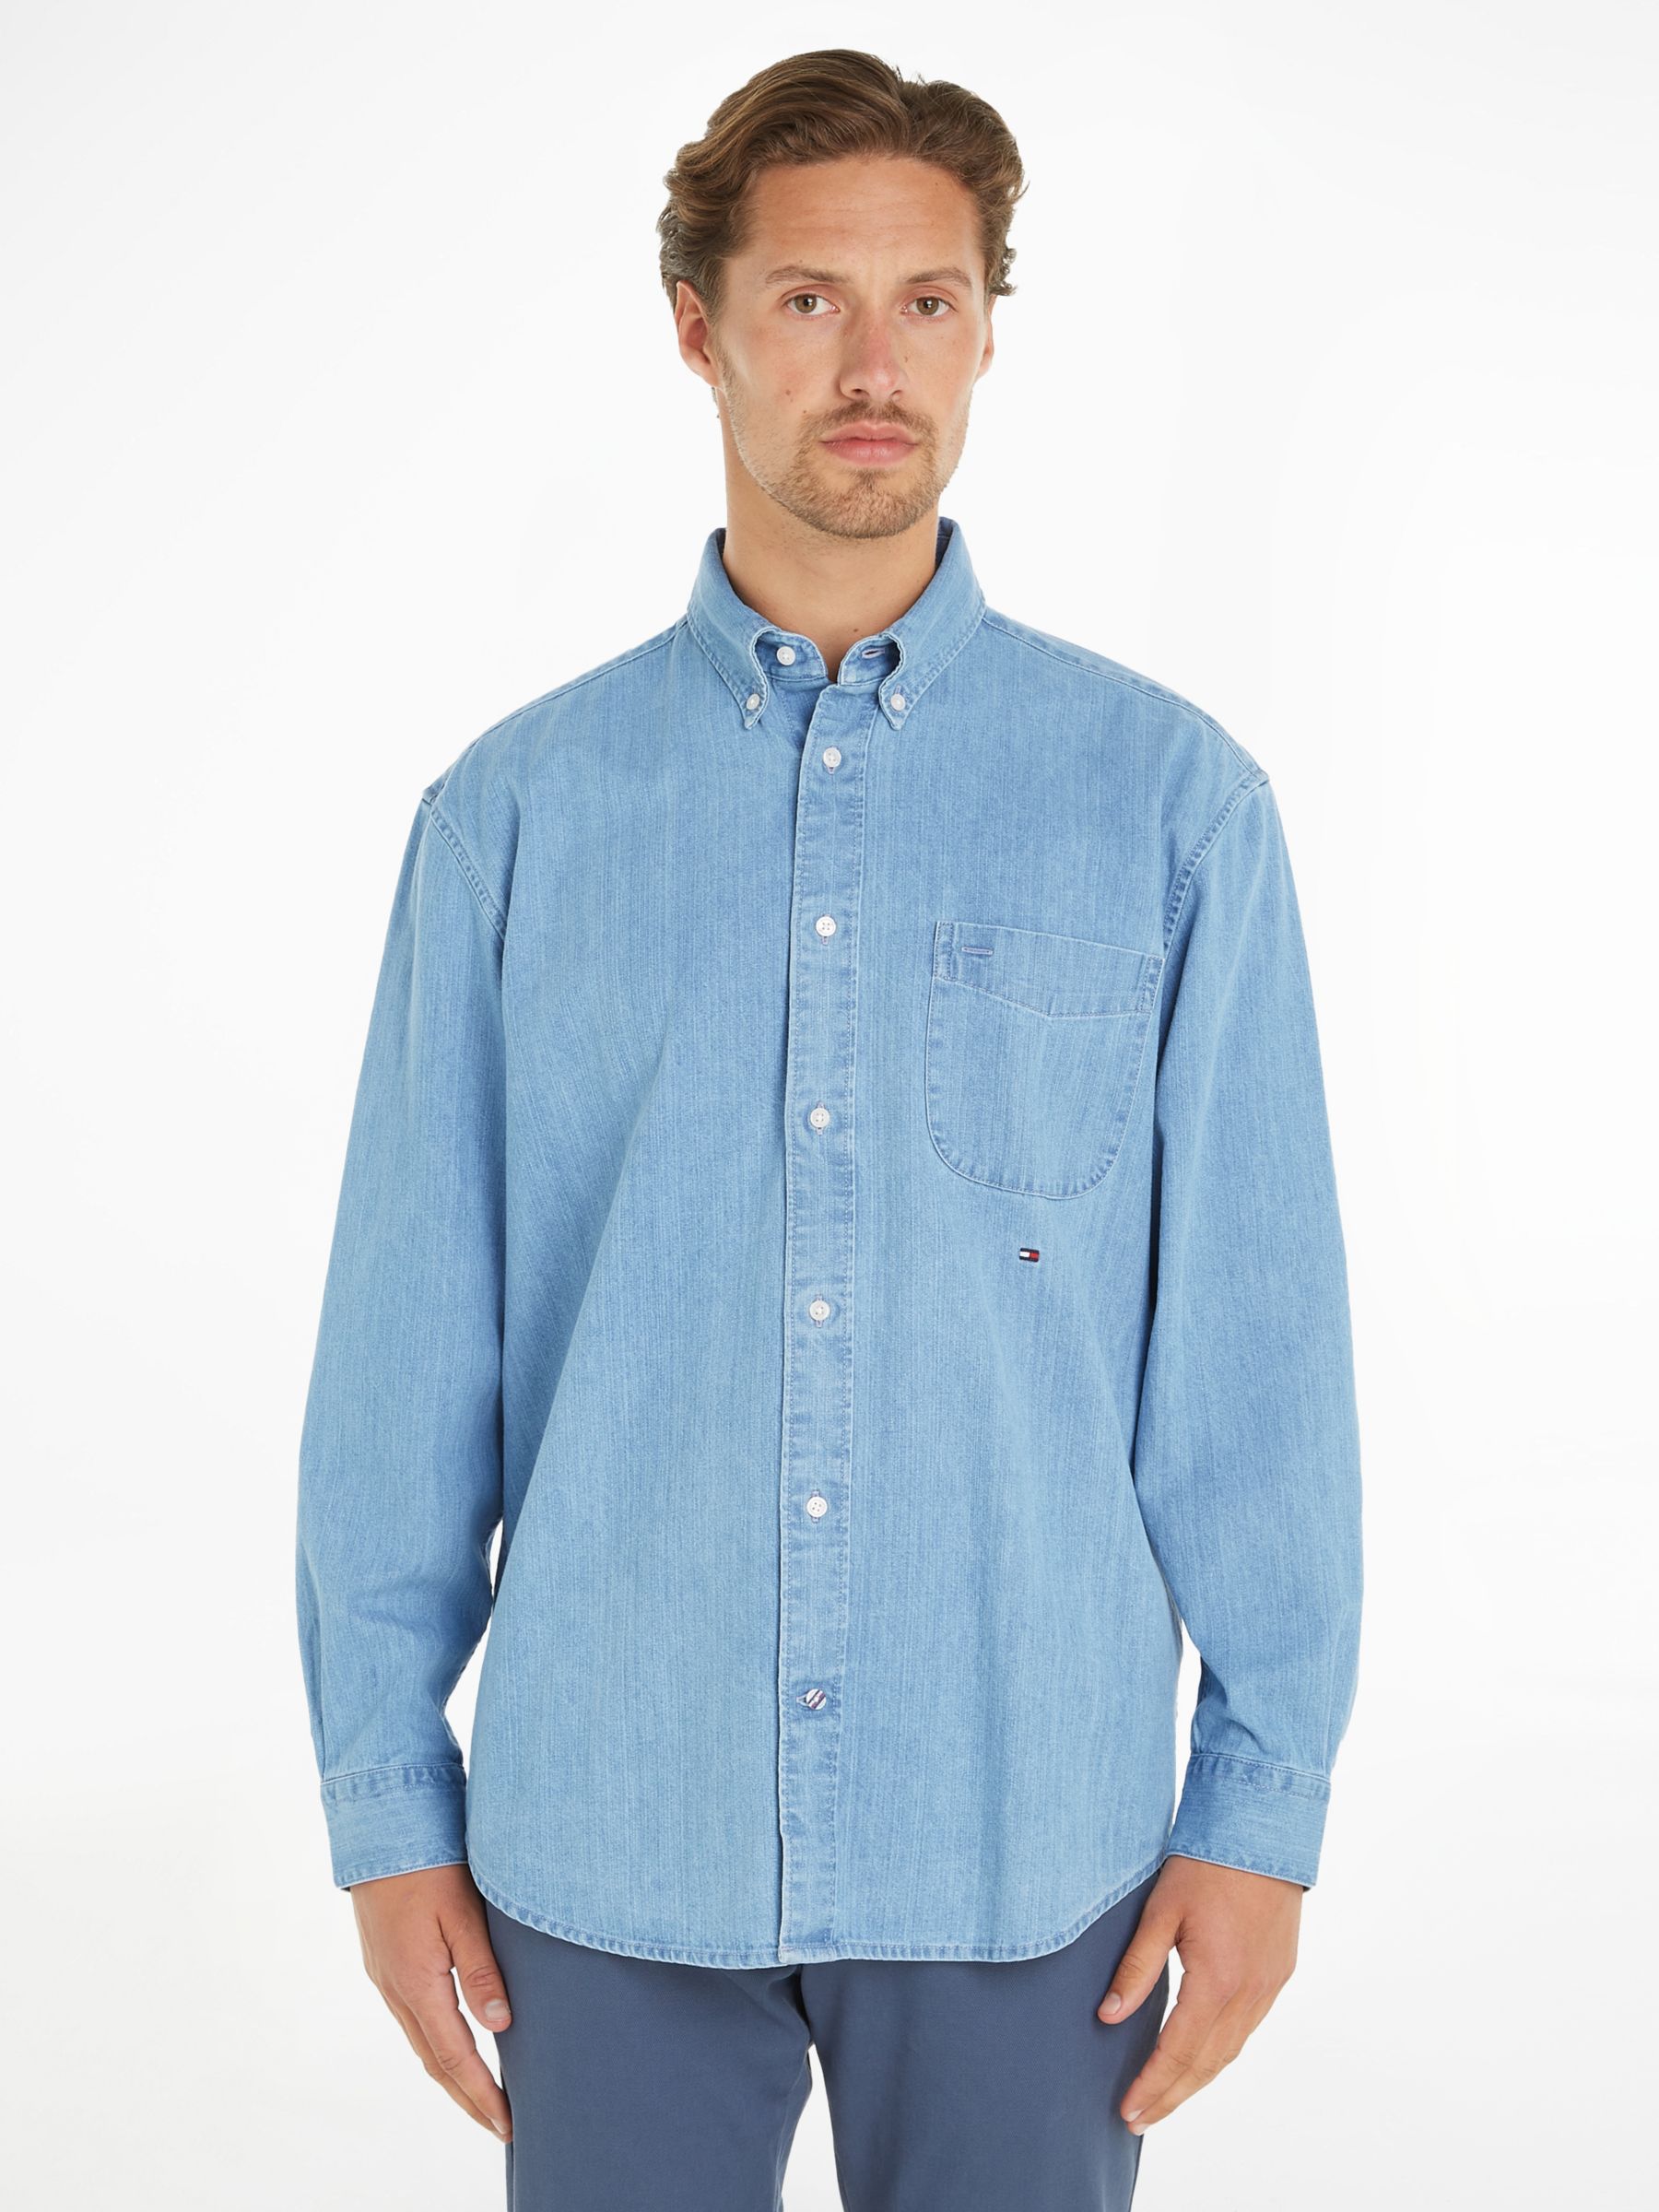 Tommy Hilfiger Natural Soft Denim Shirt, Light Blue at John Lewis ...